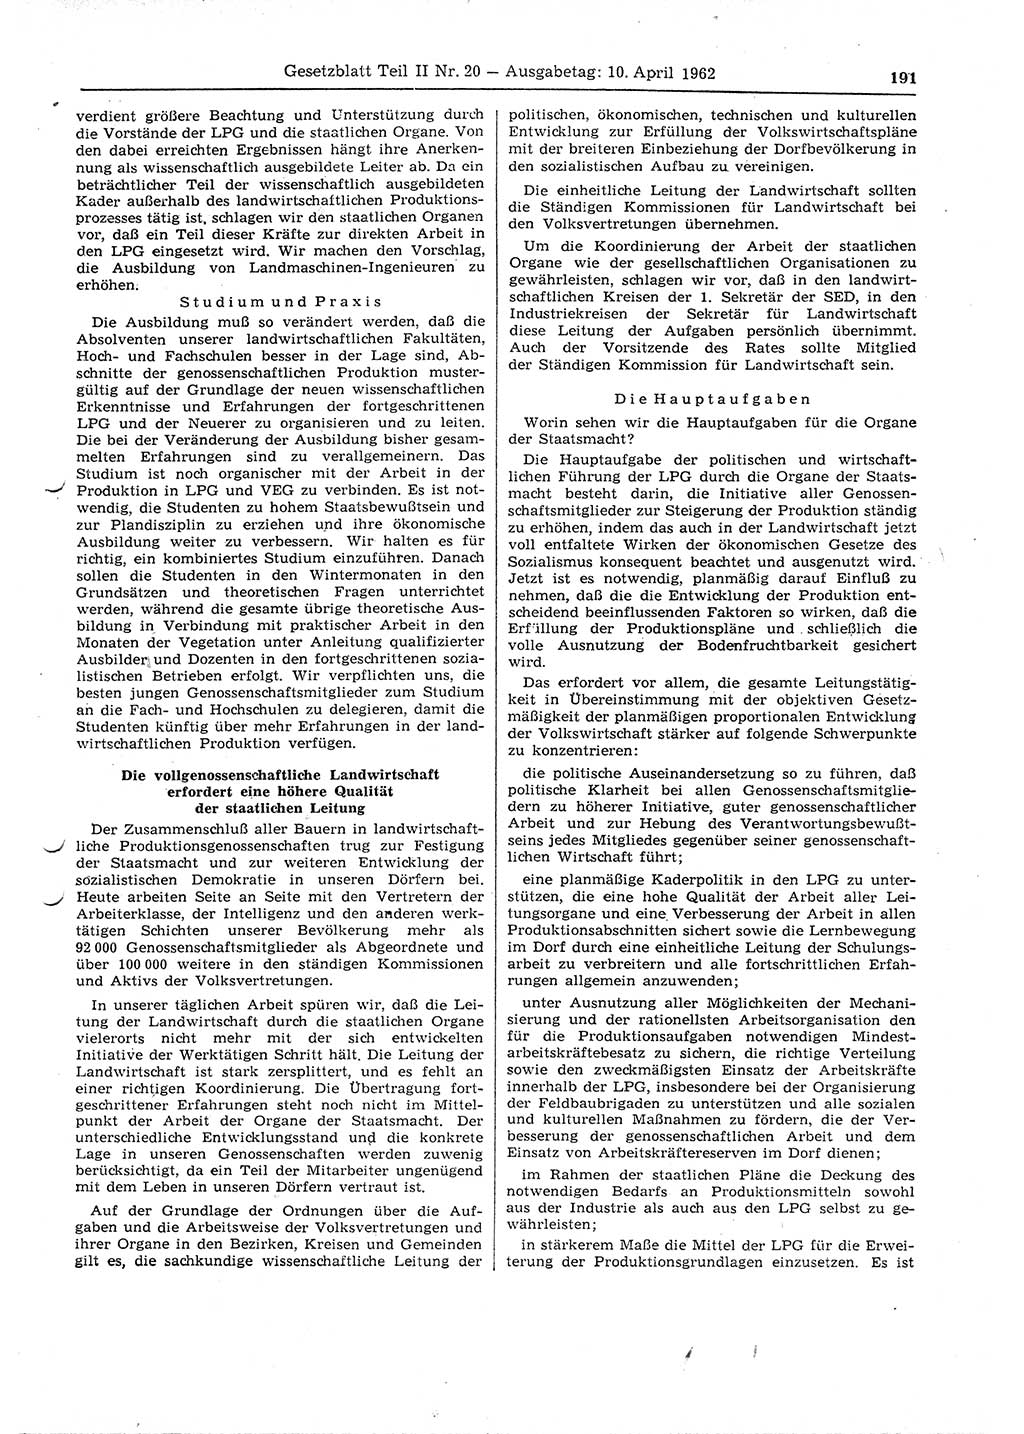 Gesetzblatt (GBl.) der Deutschen Demokratischen Republik (DDR) Teil ⅠⅠ 1962, Seite 191 (GBl. DDR ⅠⅠ 1962, S. 191)